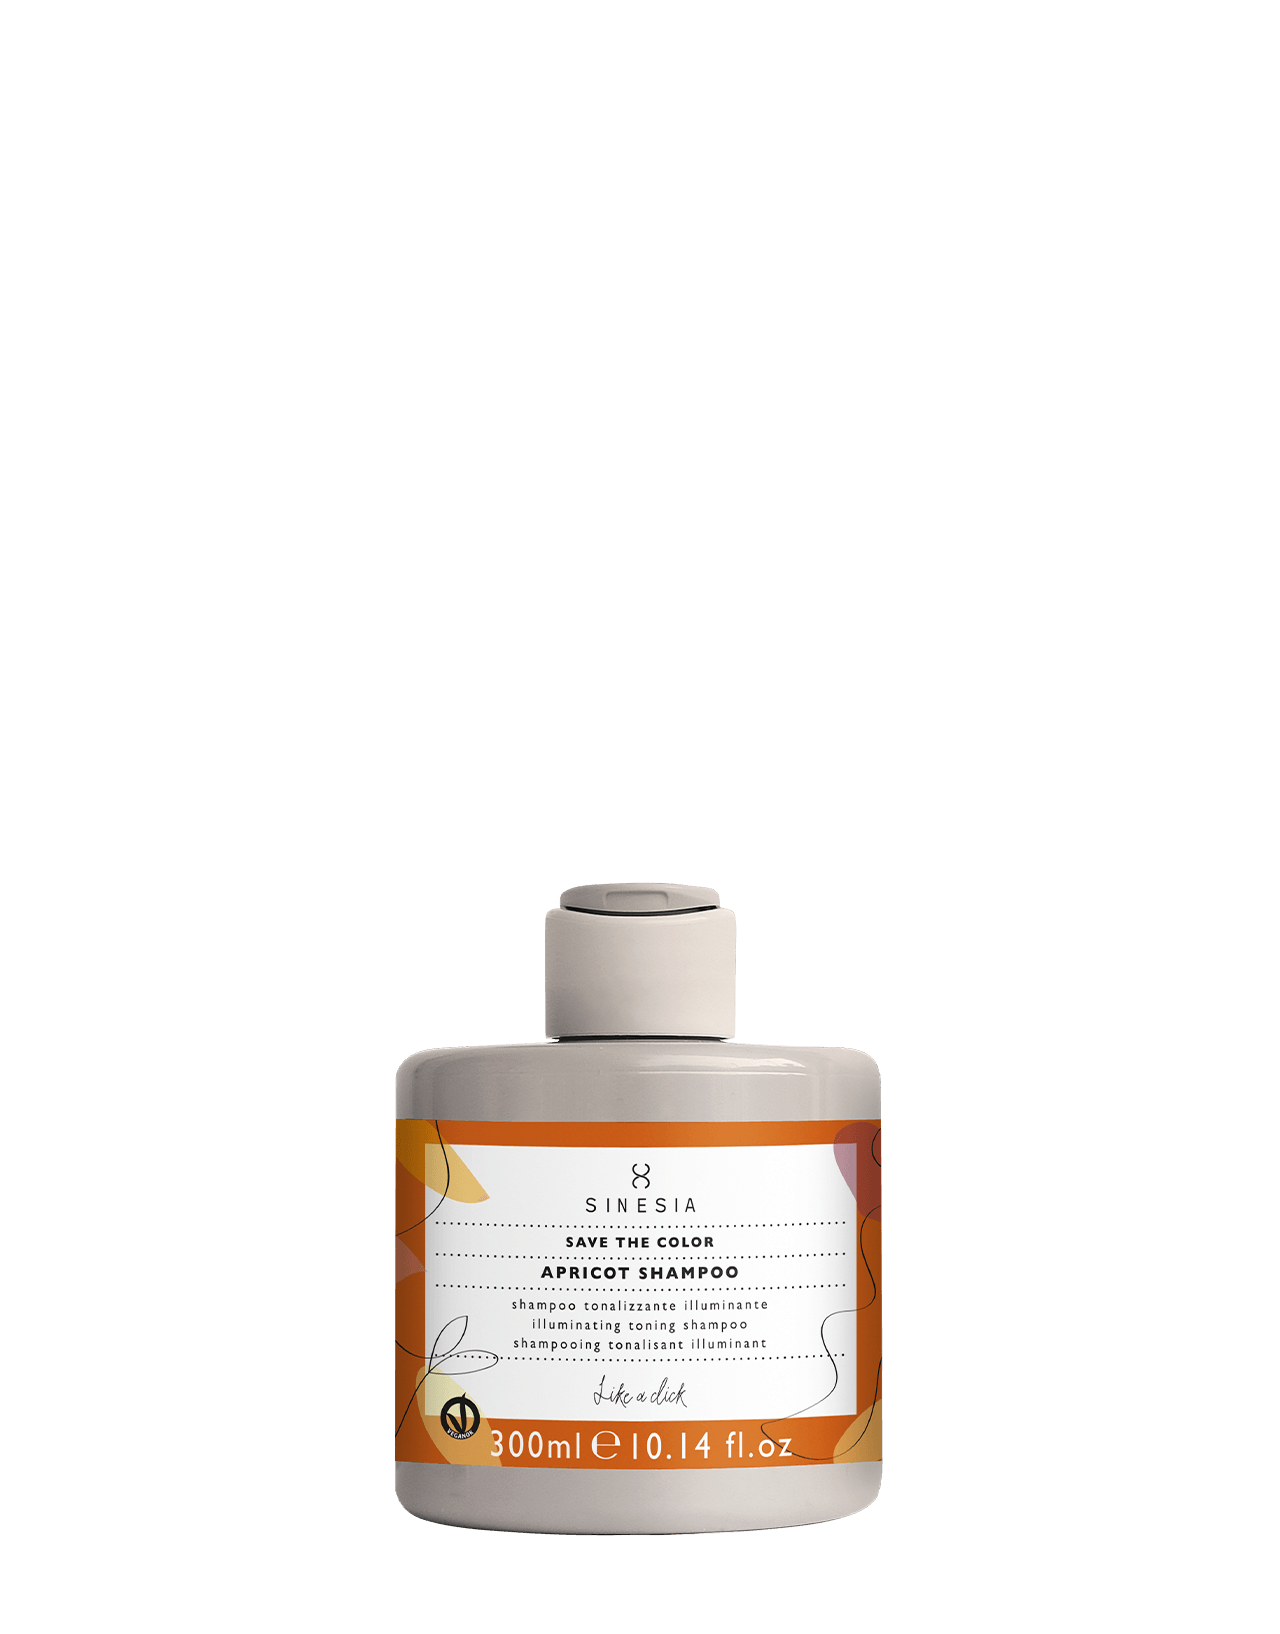 Apricot Shampoo